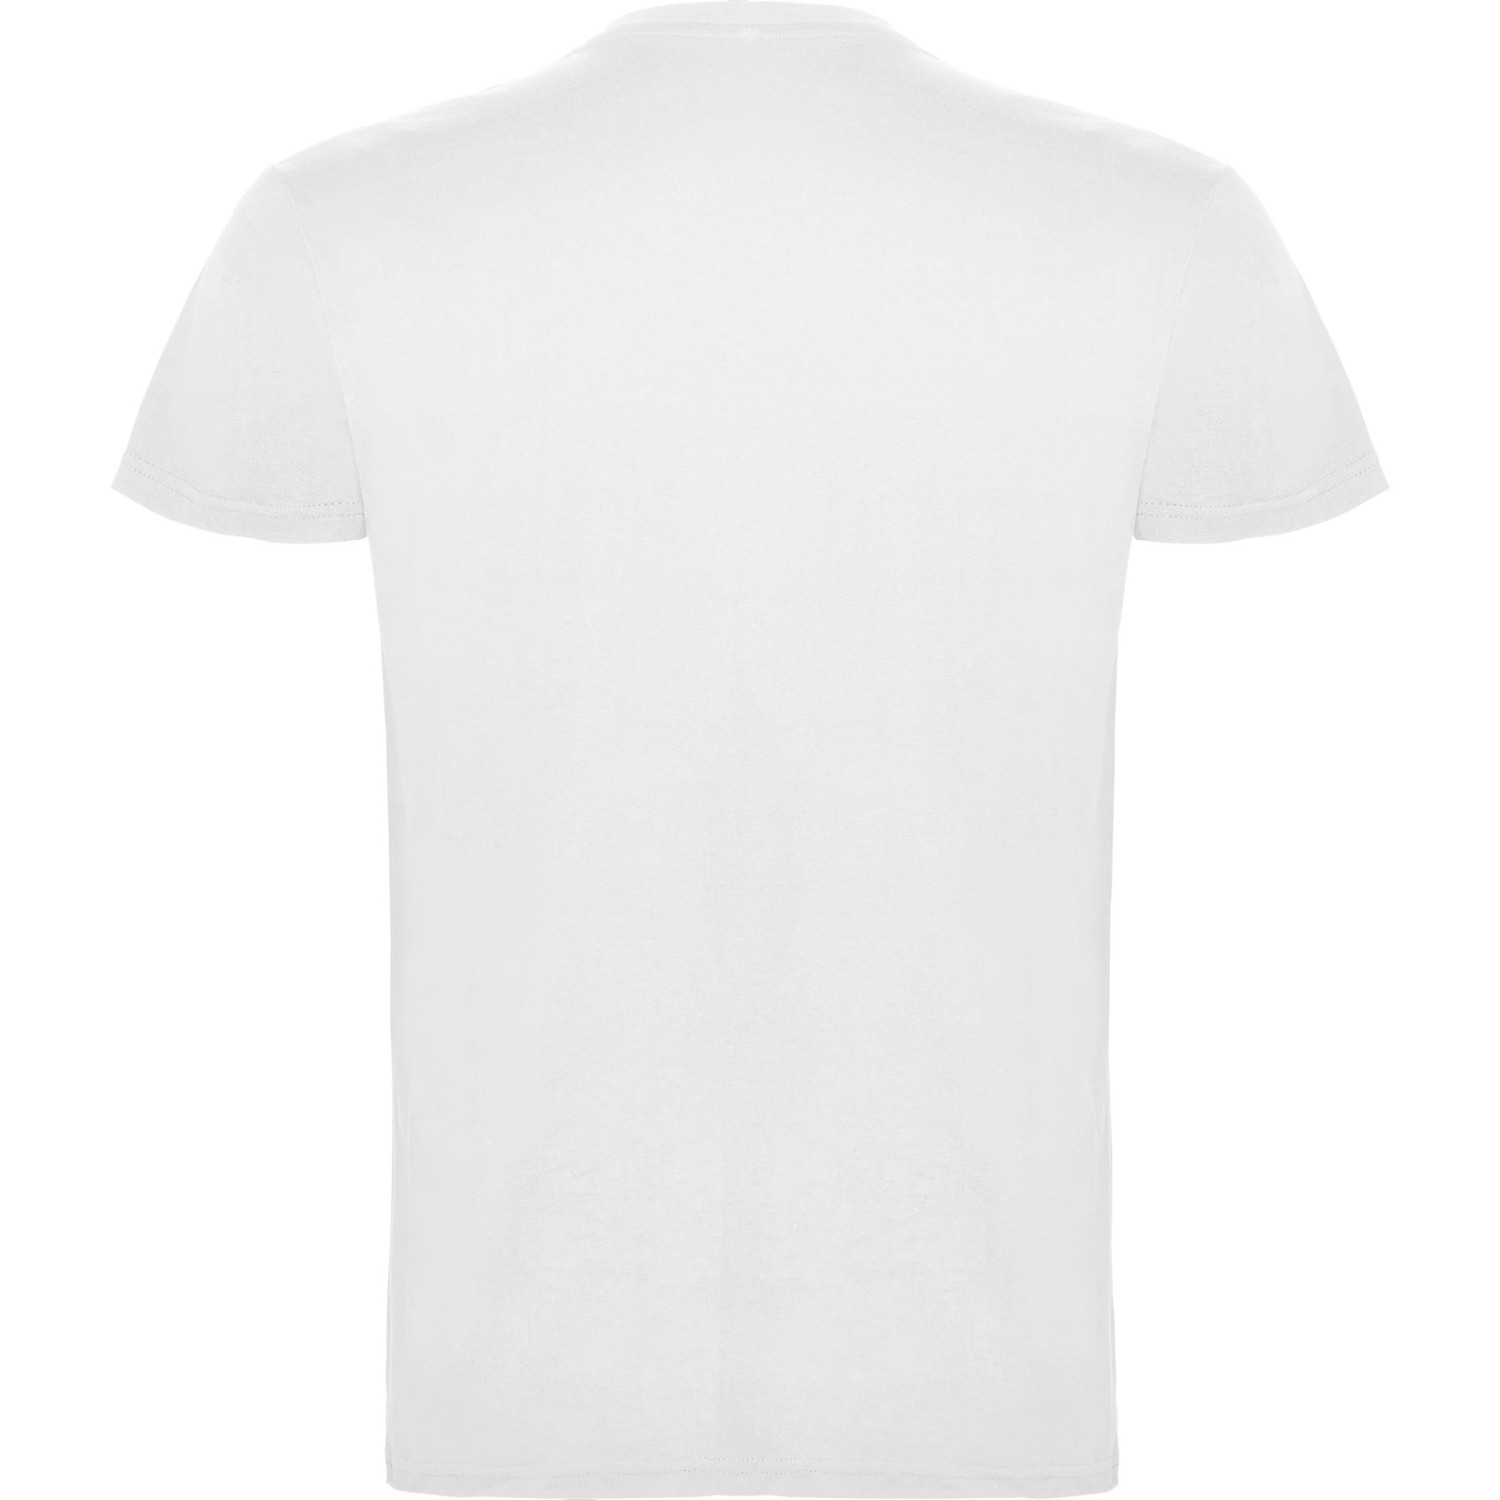 3. Foto T-Shirt BEAGLE Kurzarm Rundhals mit Druck (Farbe: weiß Größe: 4XL)